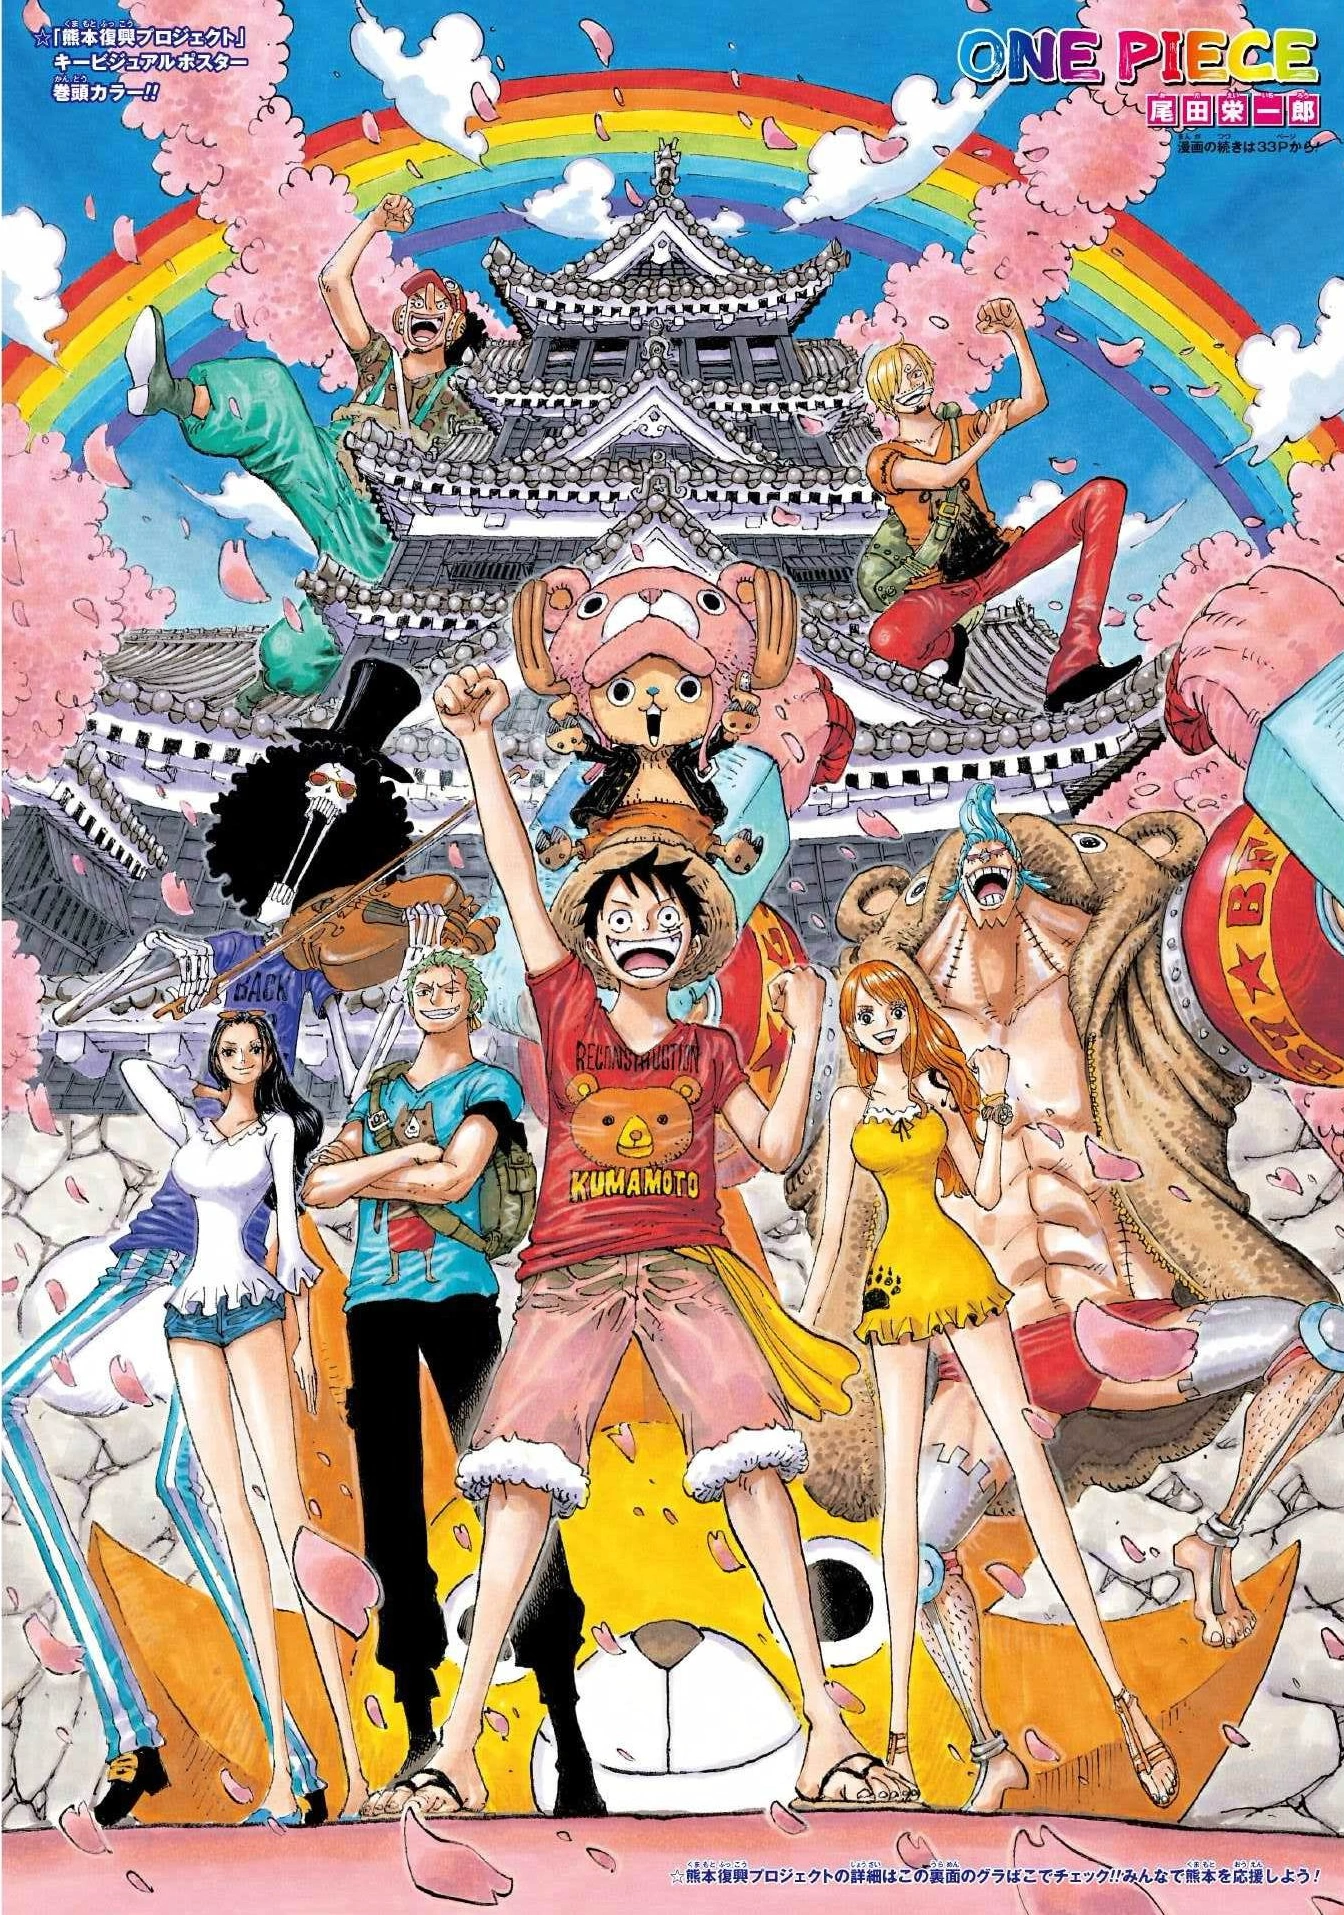 Pourquoi One Piece connaît-il un si grand succès ?